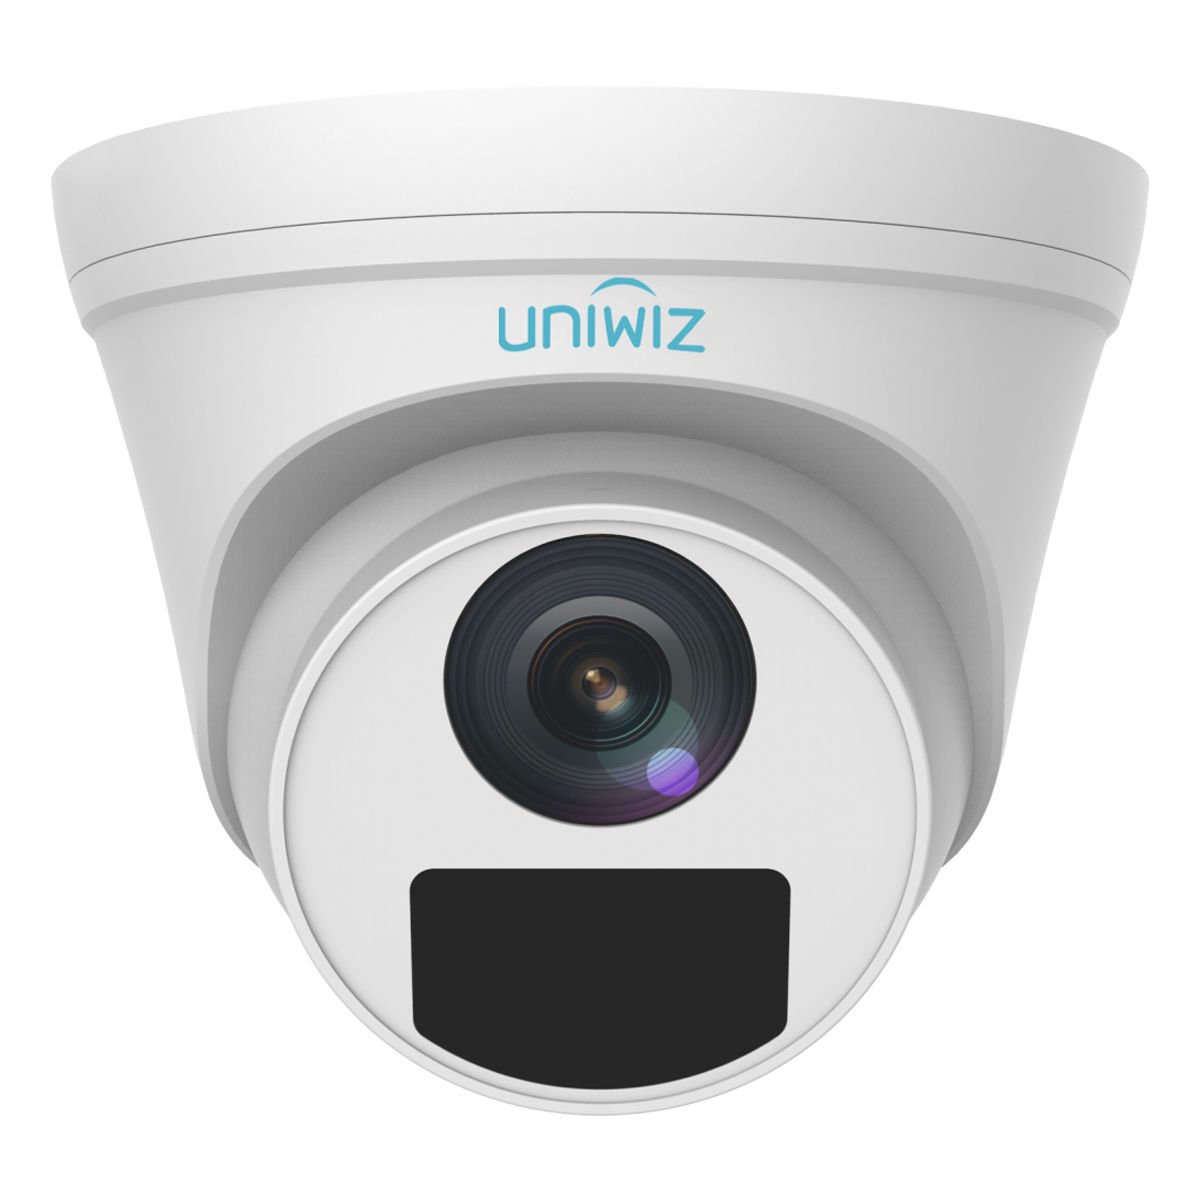 Uniwiz UAC-T112-F28 2.8 MM Lens Dome Analog Güvenlik Kamerası